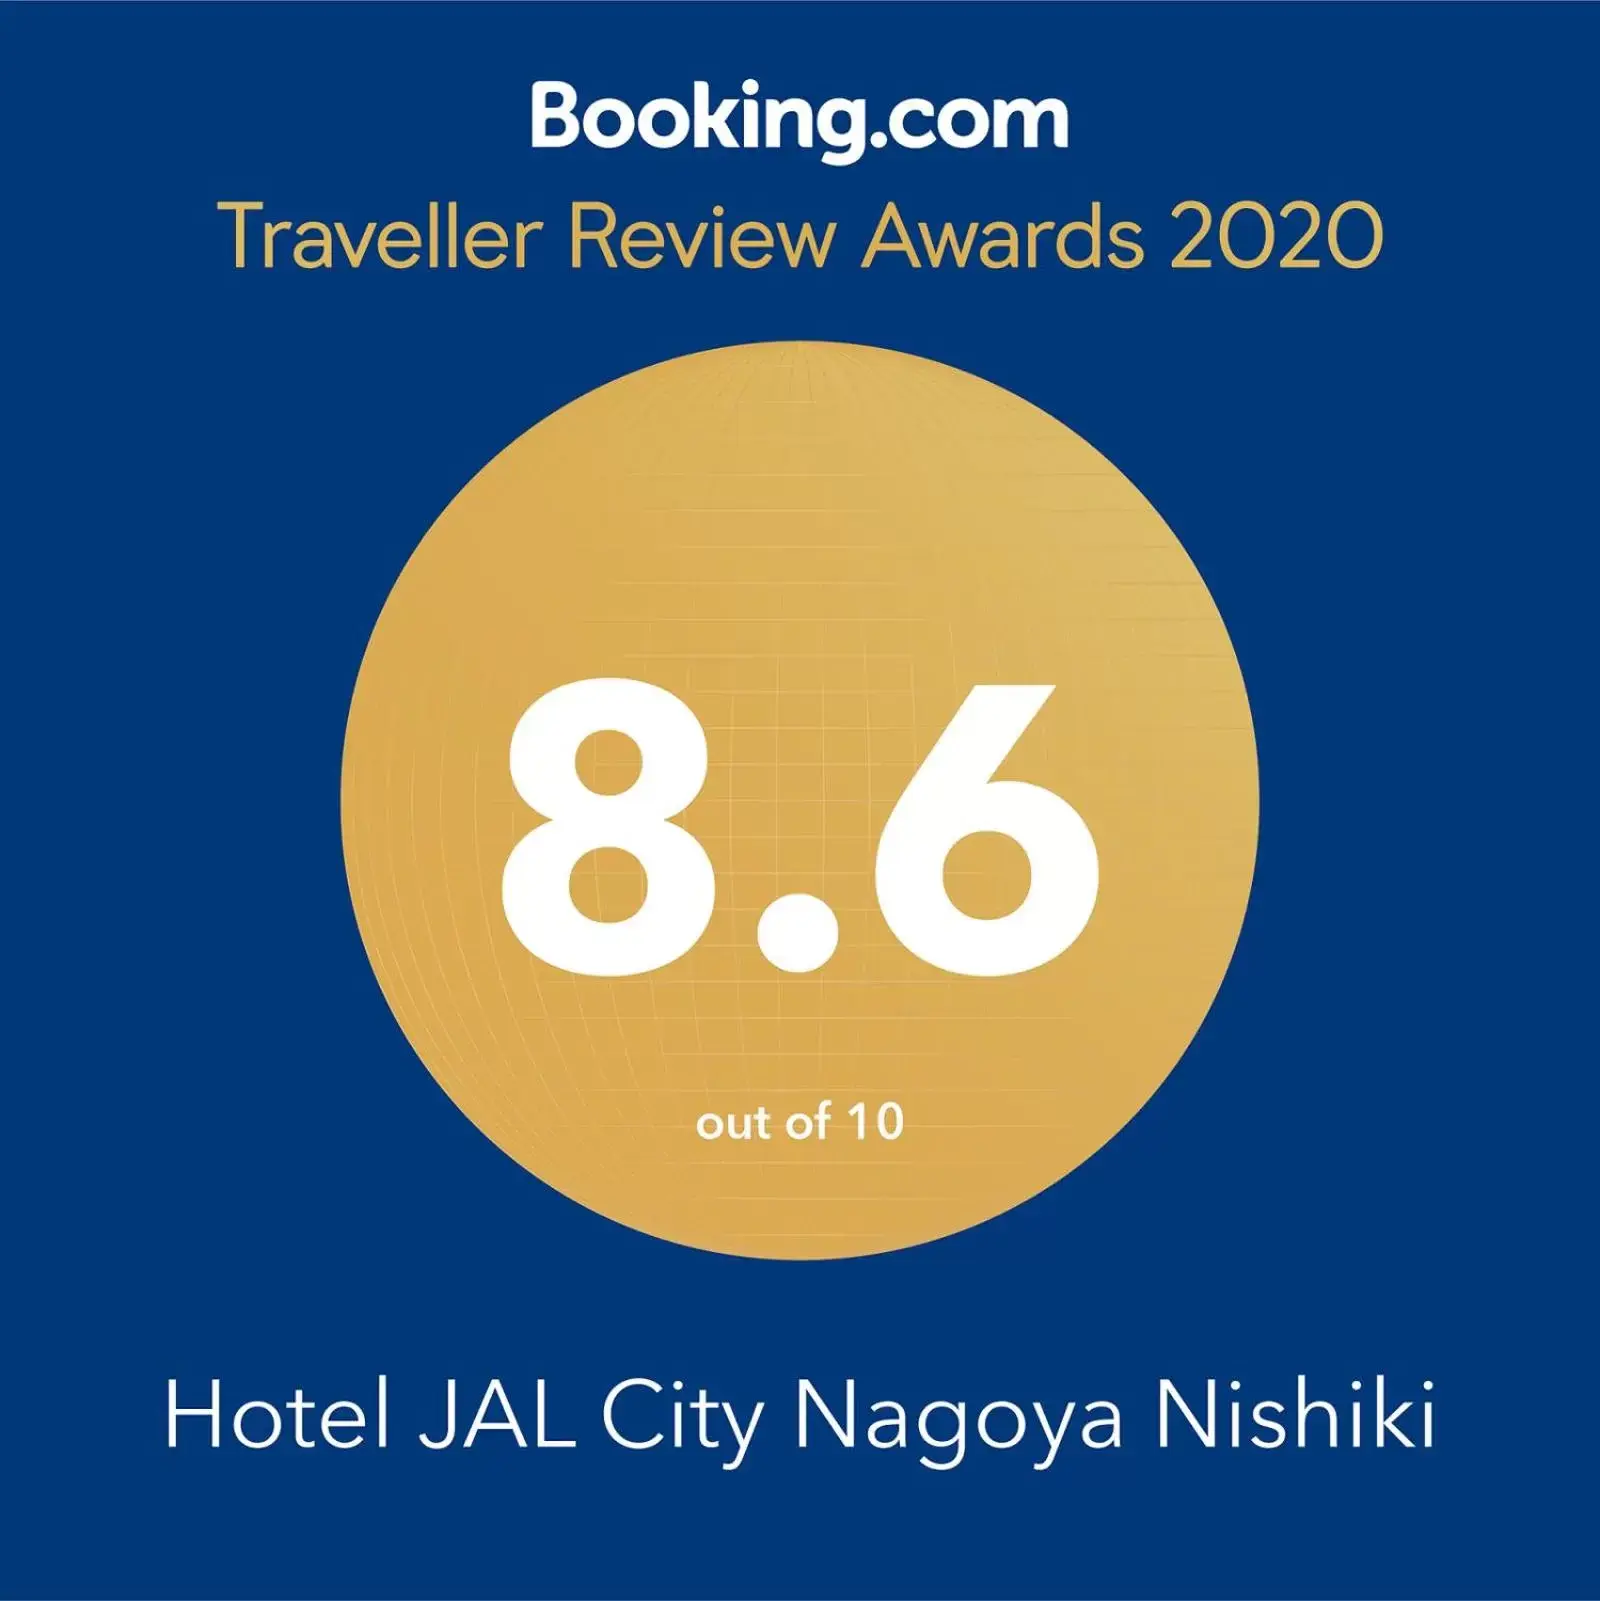 Hotel JAL City Nagoya Nishiki